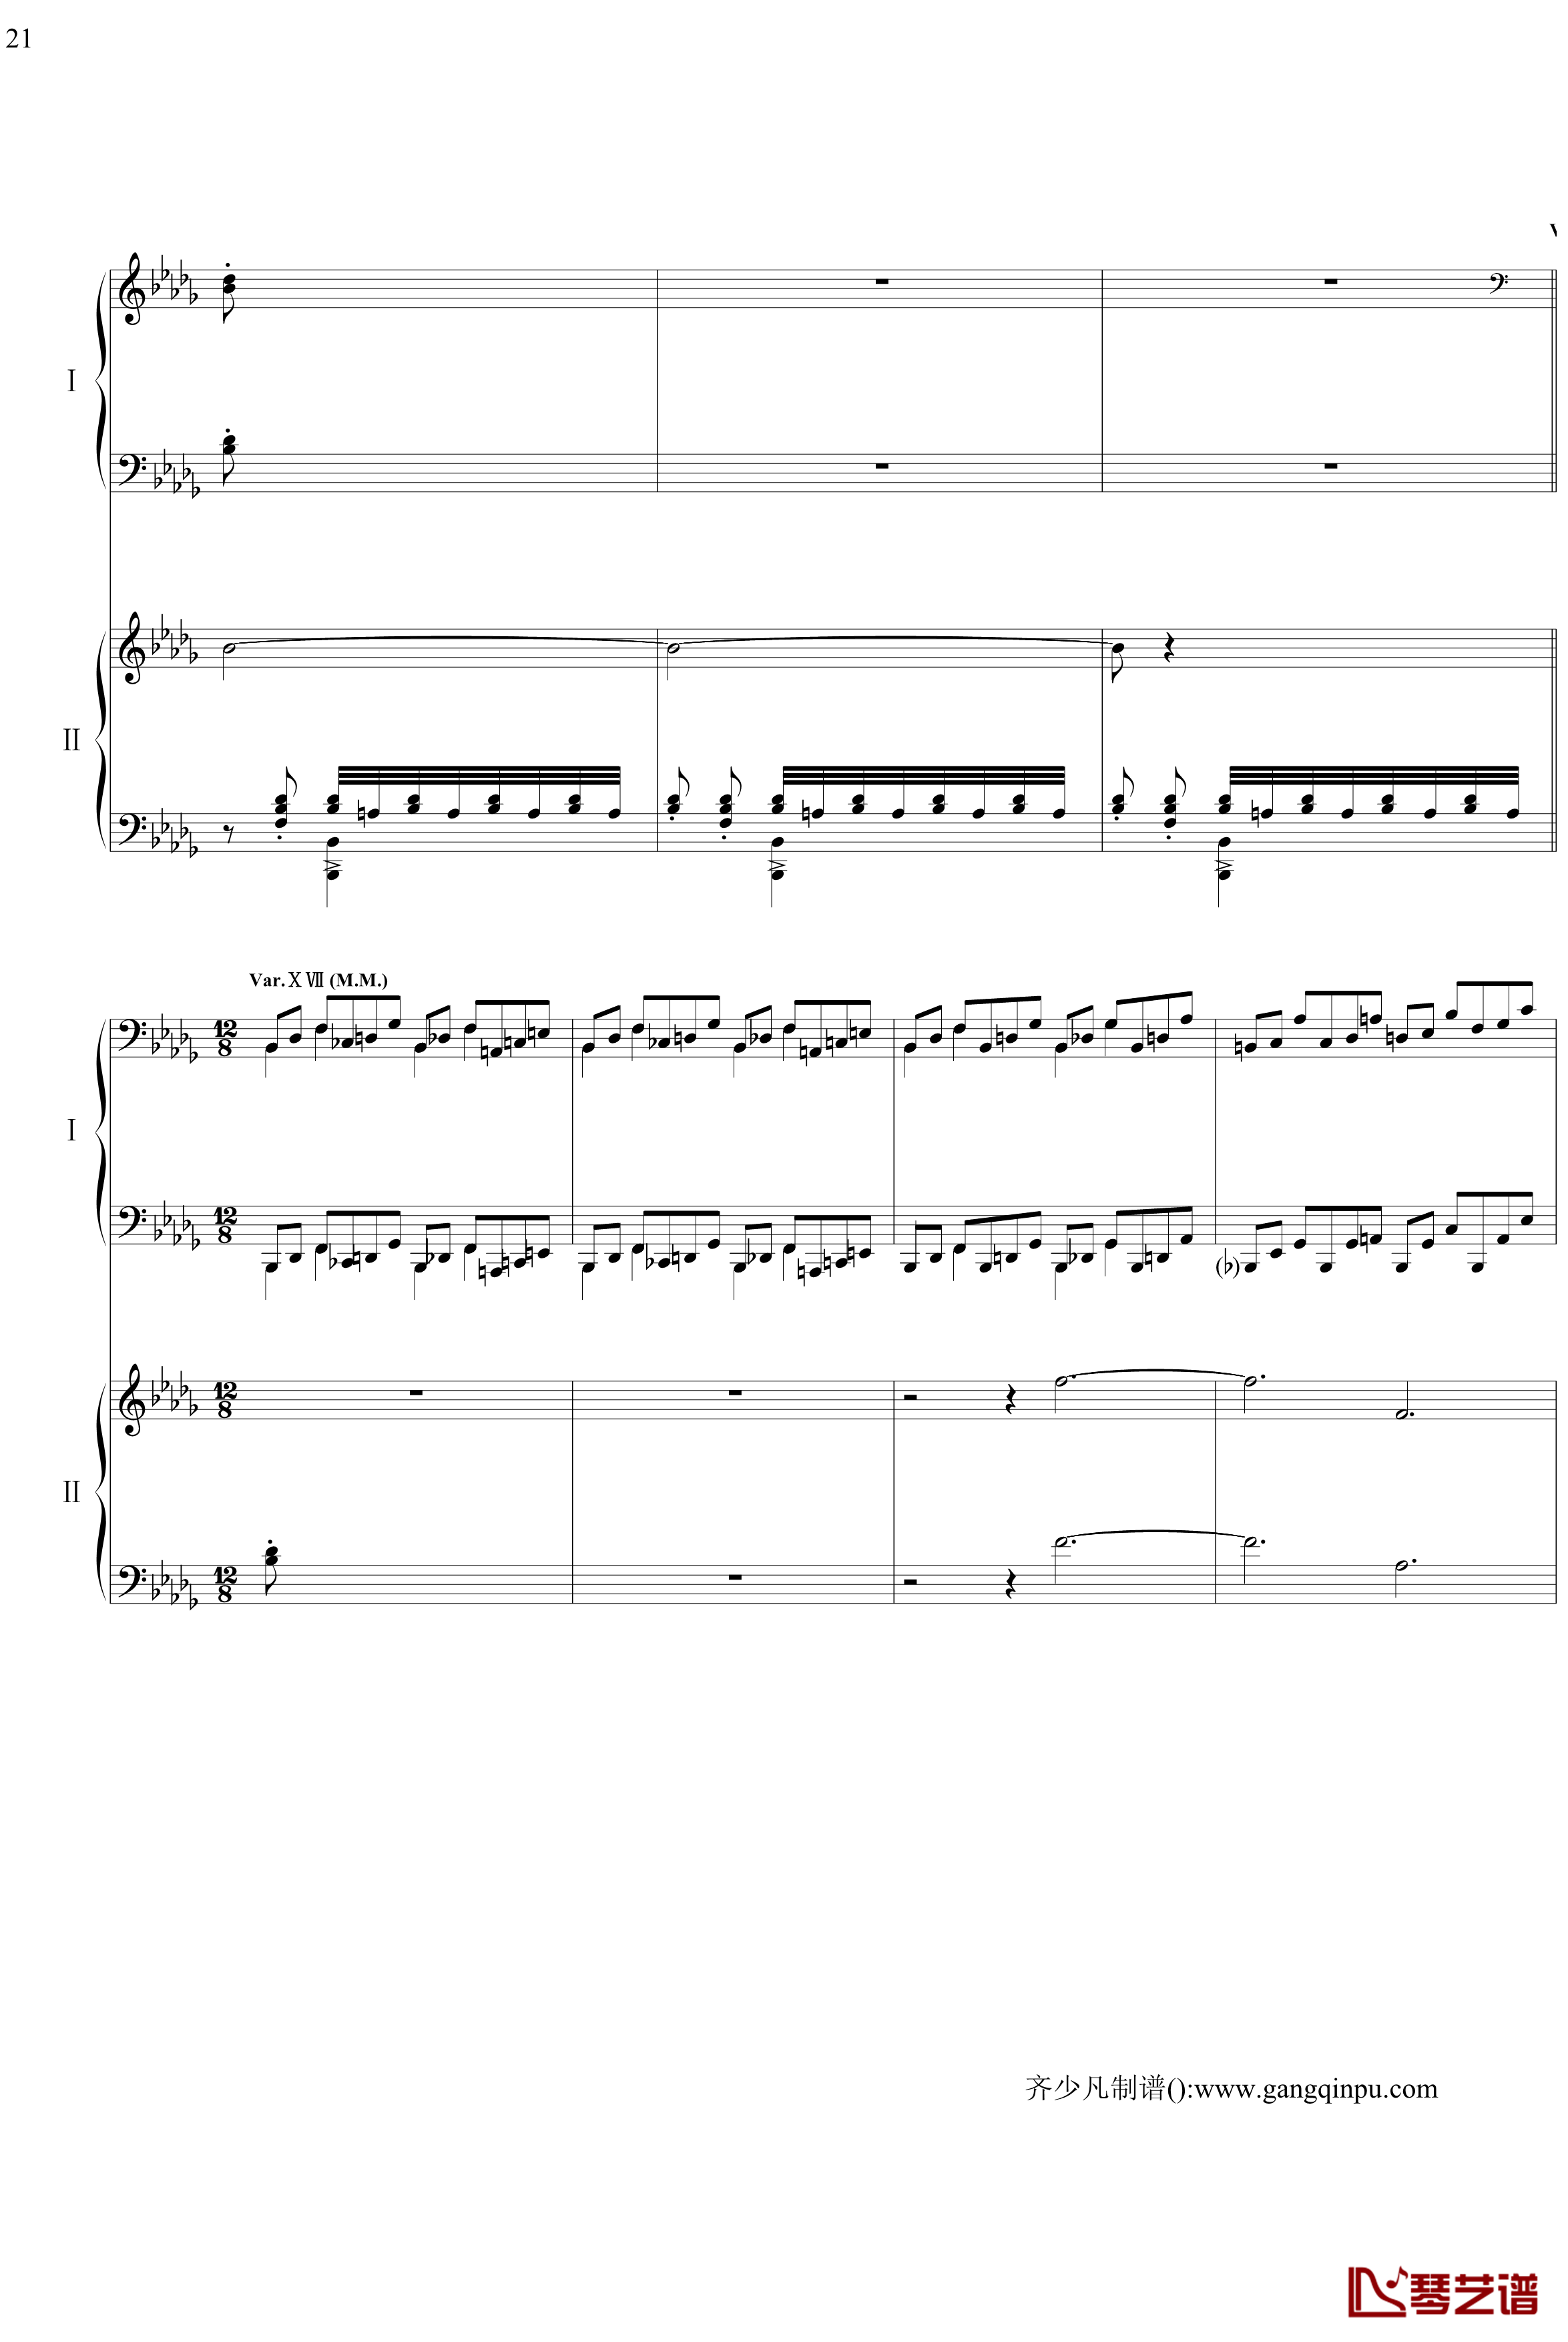 帕格尼尼主题狂想曲钢琴谱-11~18变奏-拉赫马尼若夫21